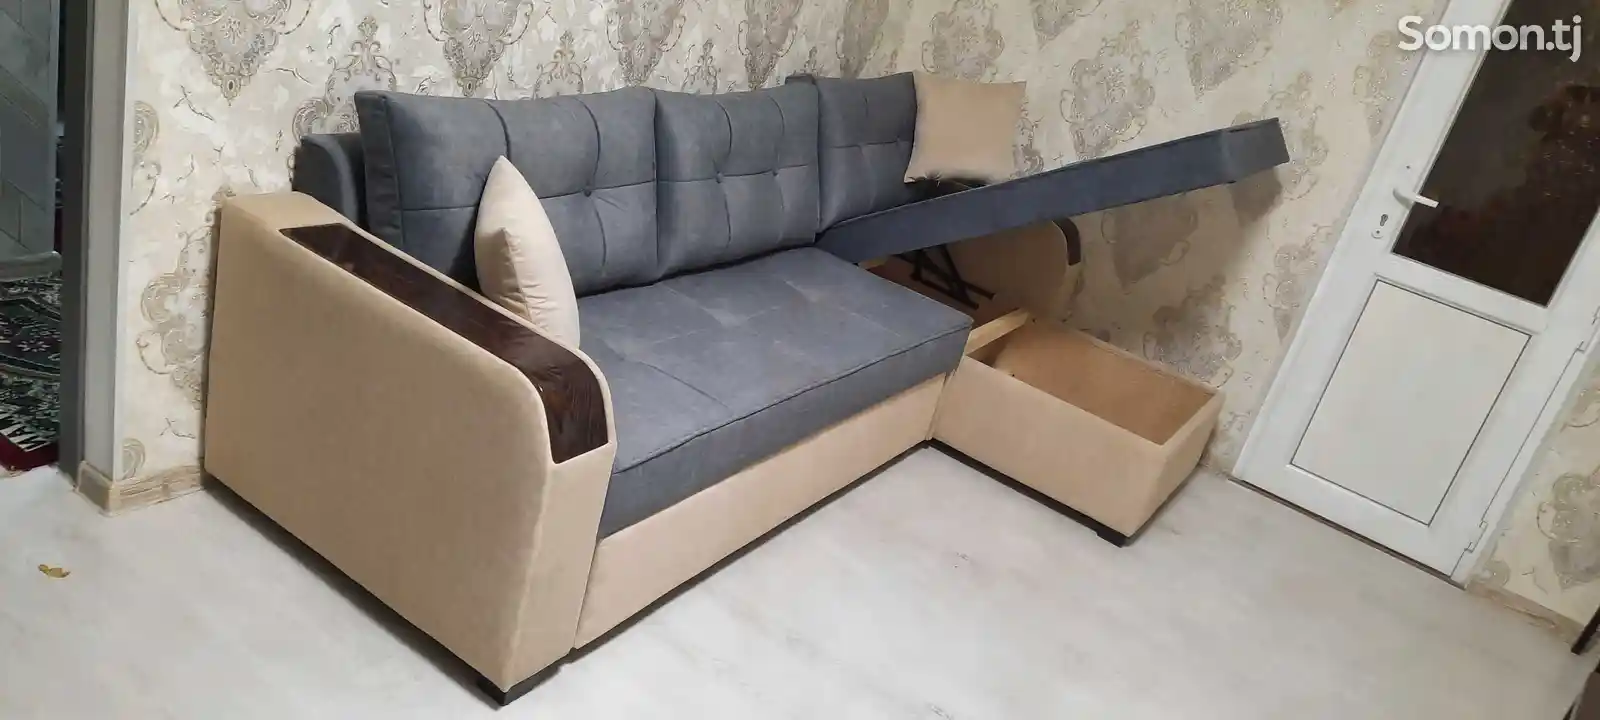 Раскладной диван хайтек на заказ-4